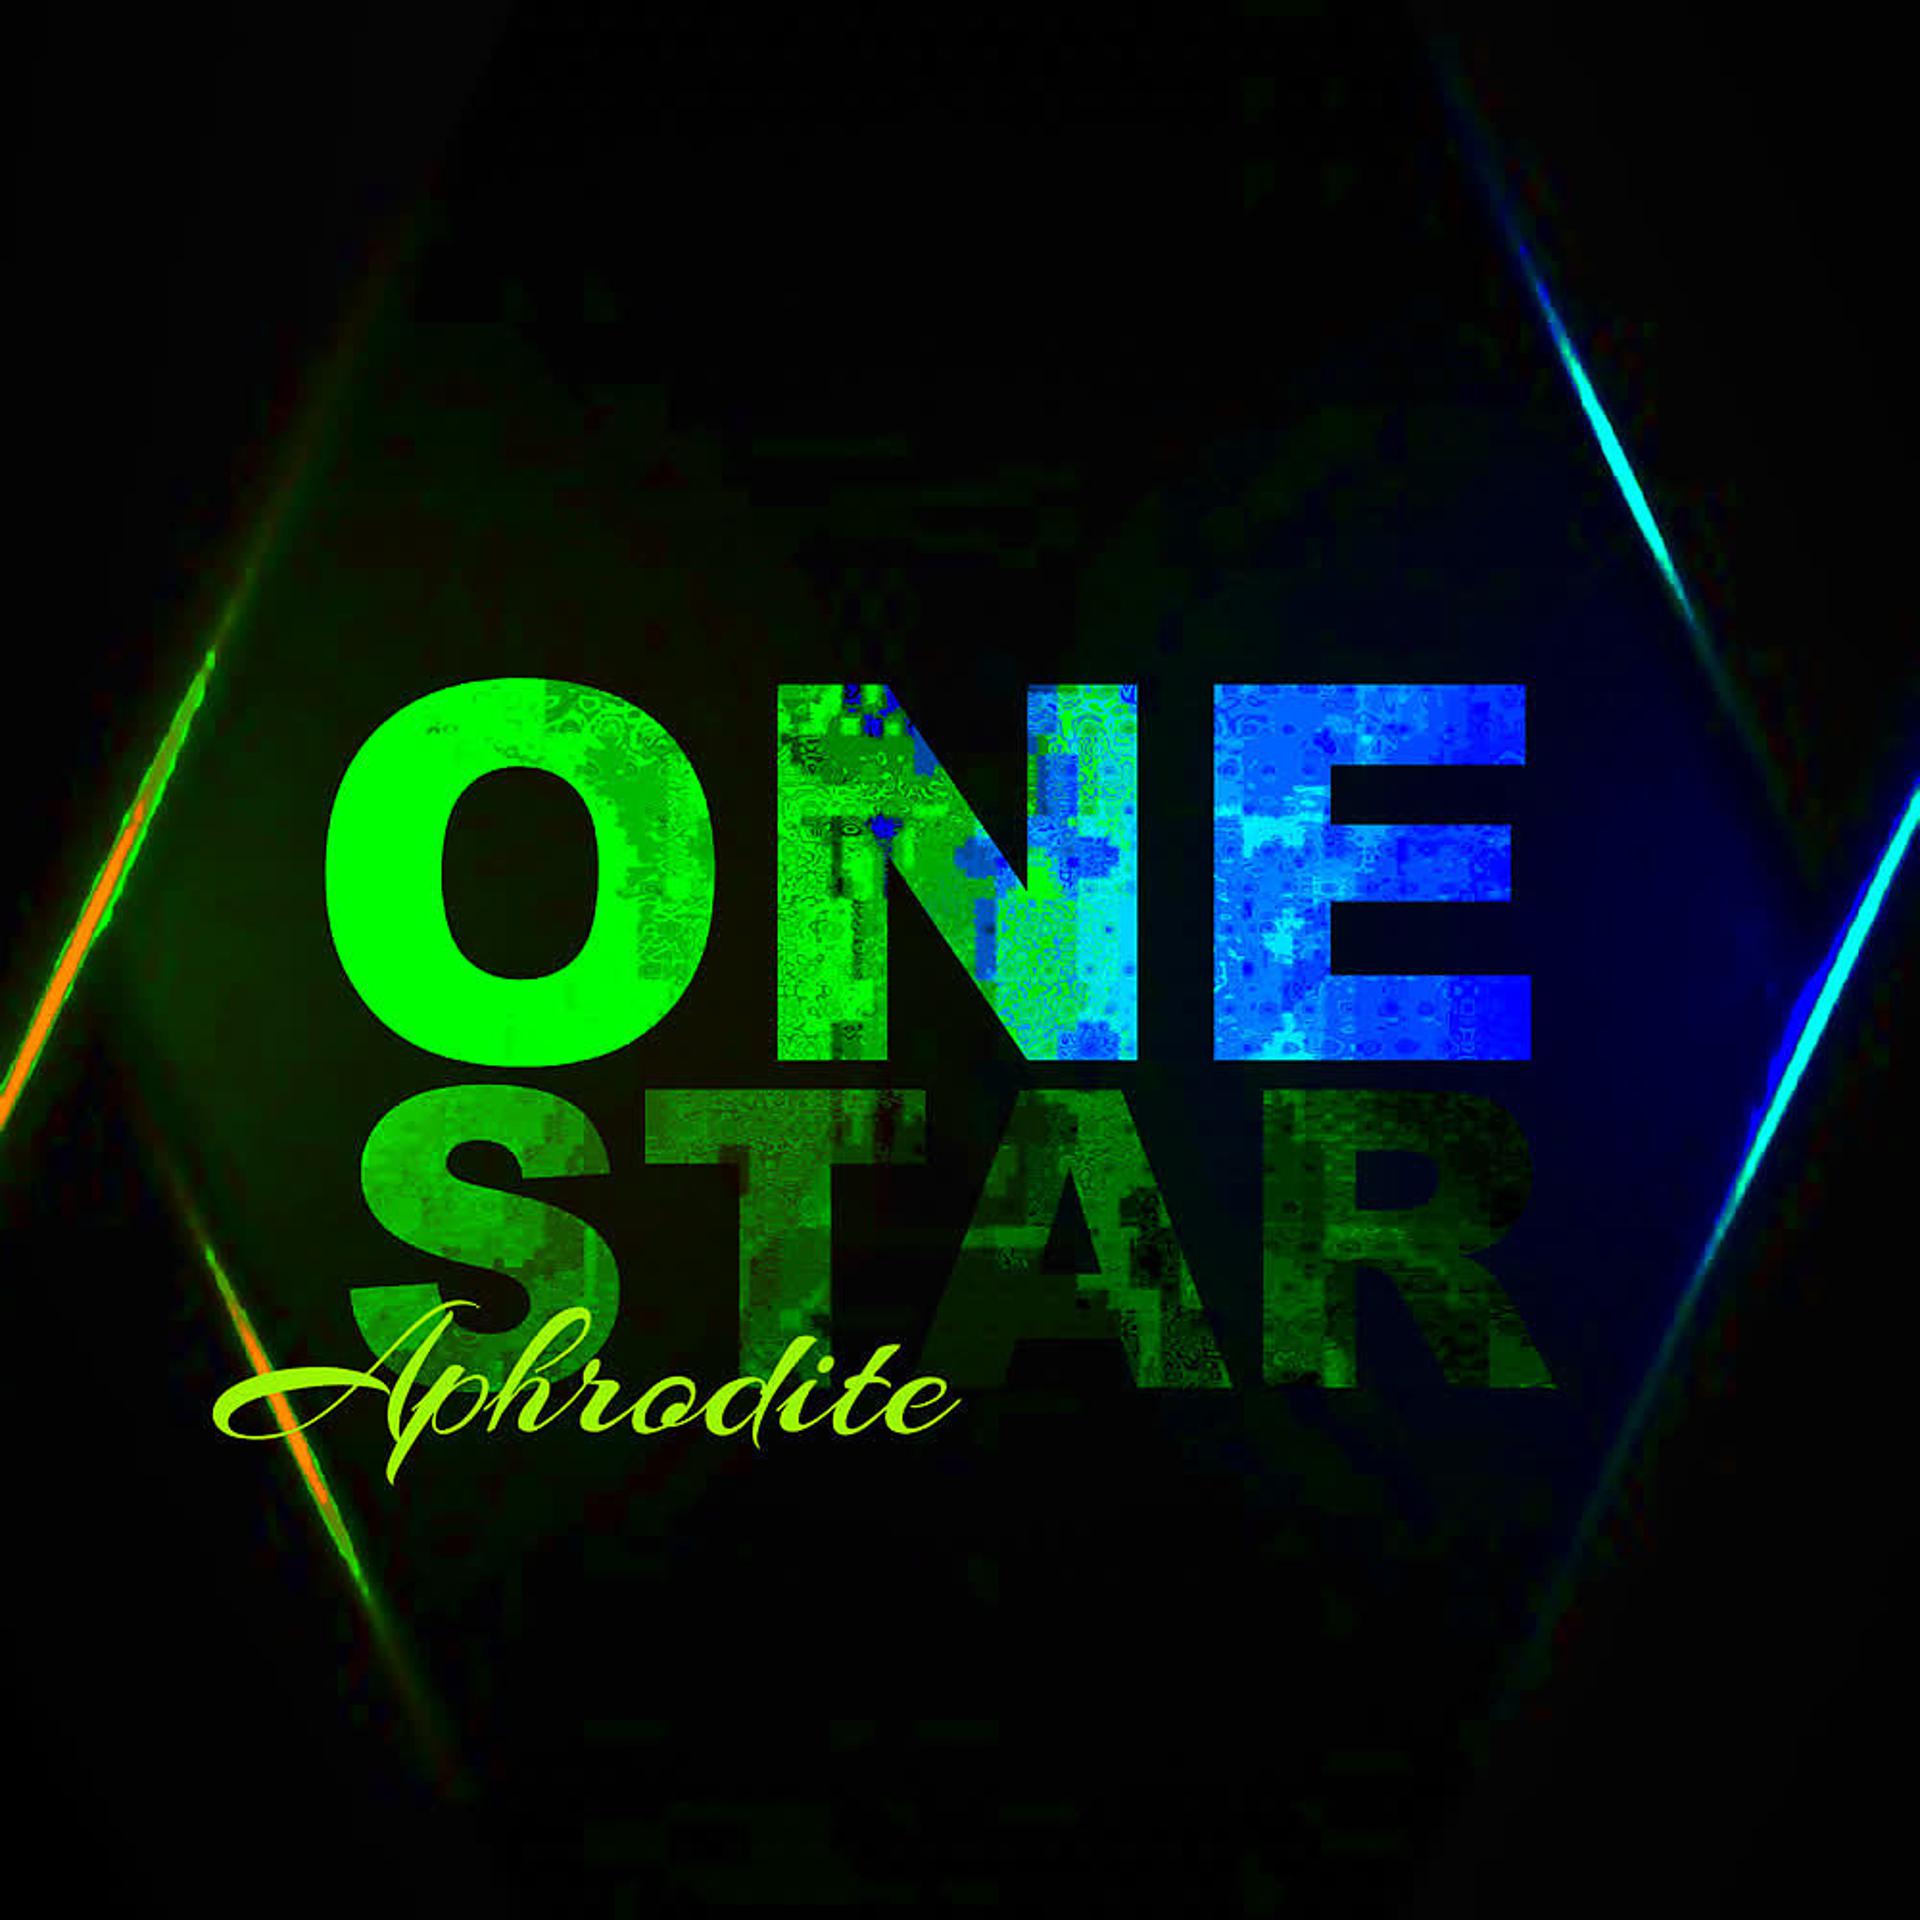 Постер альбома One Star